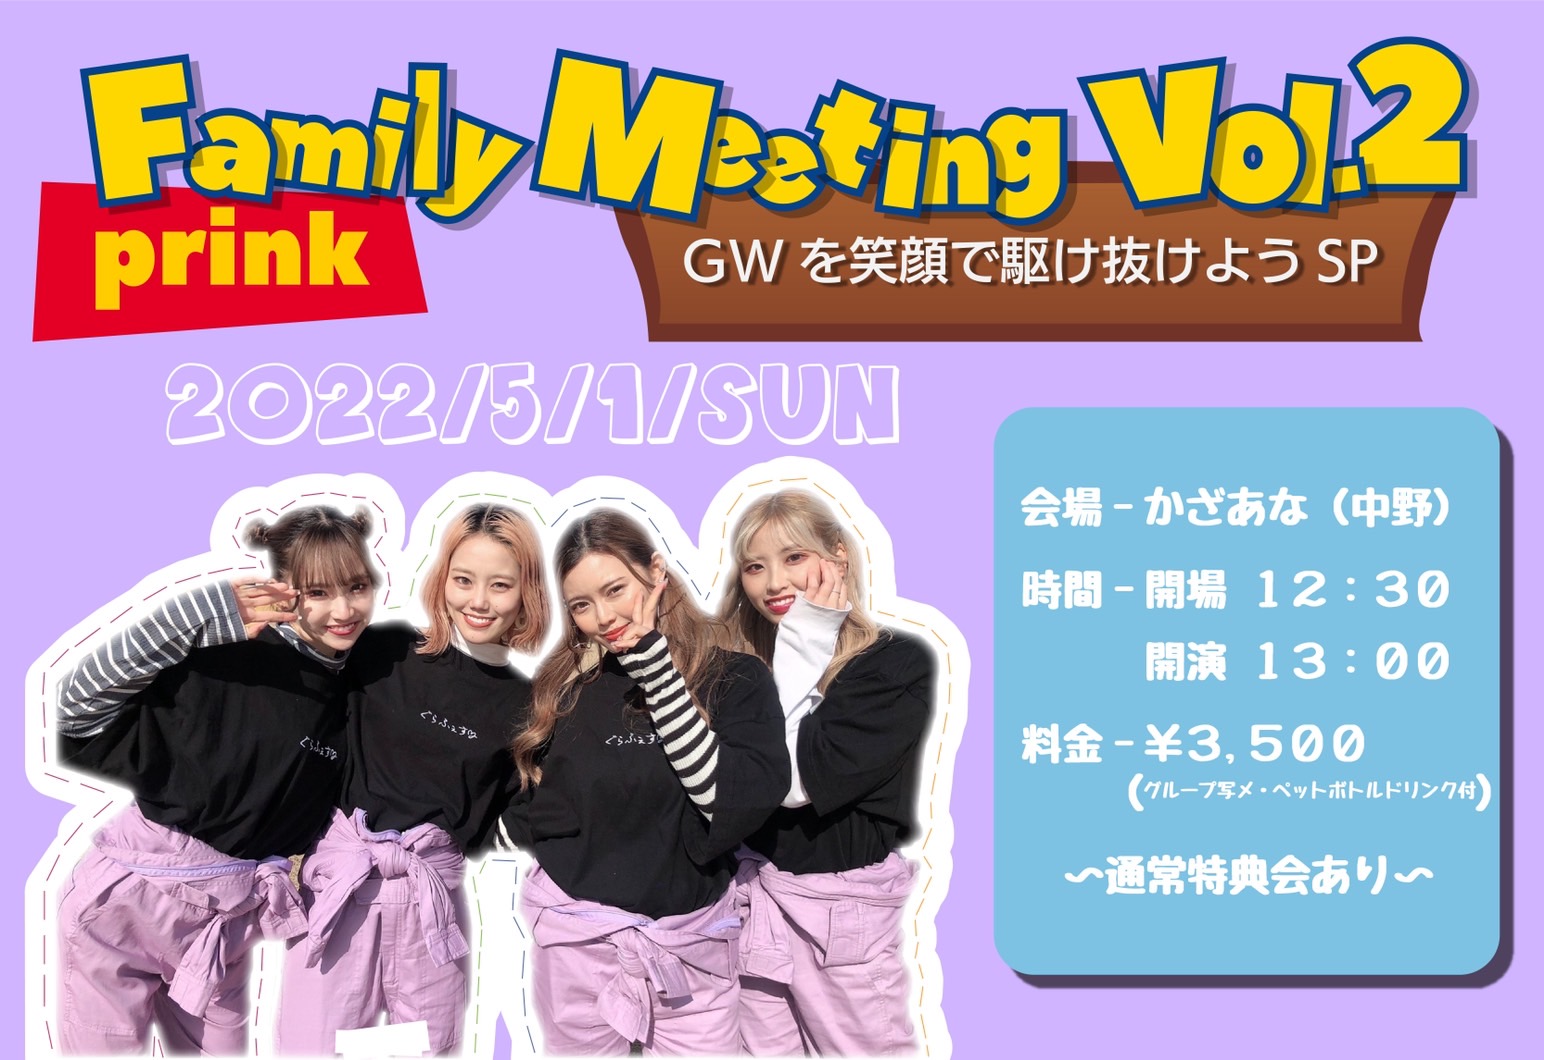 【ファンイベント】prink Family Meeting Vol.2～GWを笑顔で駆け抜けよう SP～（東京・中野）